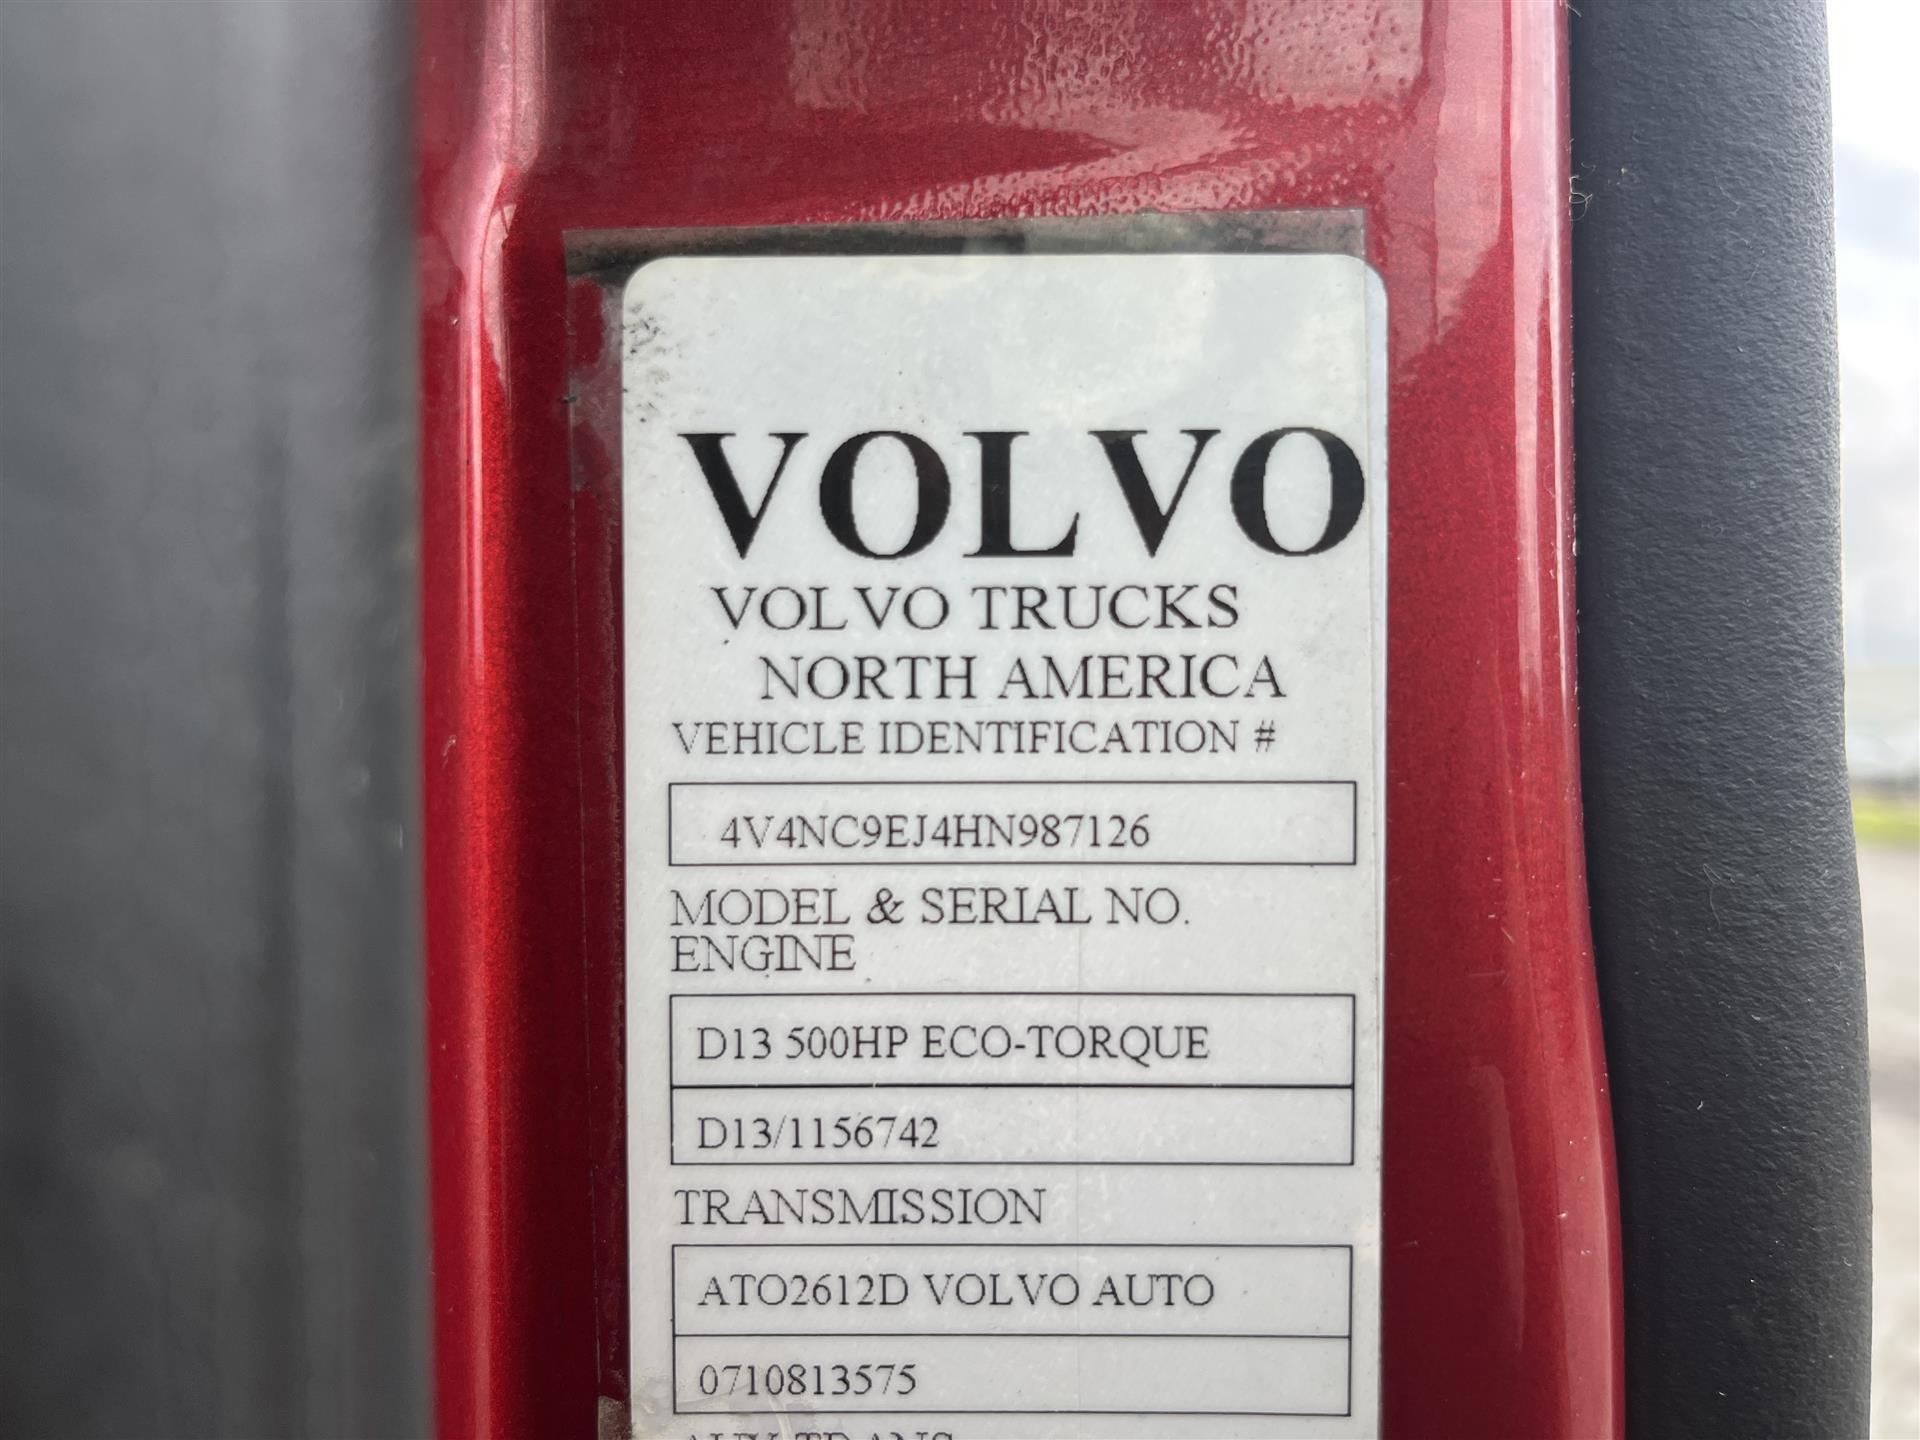 2017 Volvo VNL670 – 987126